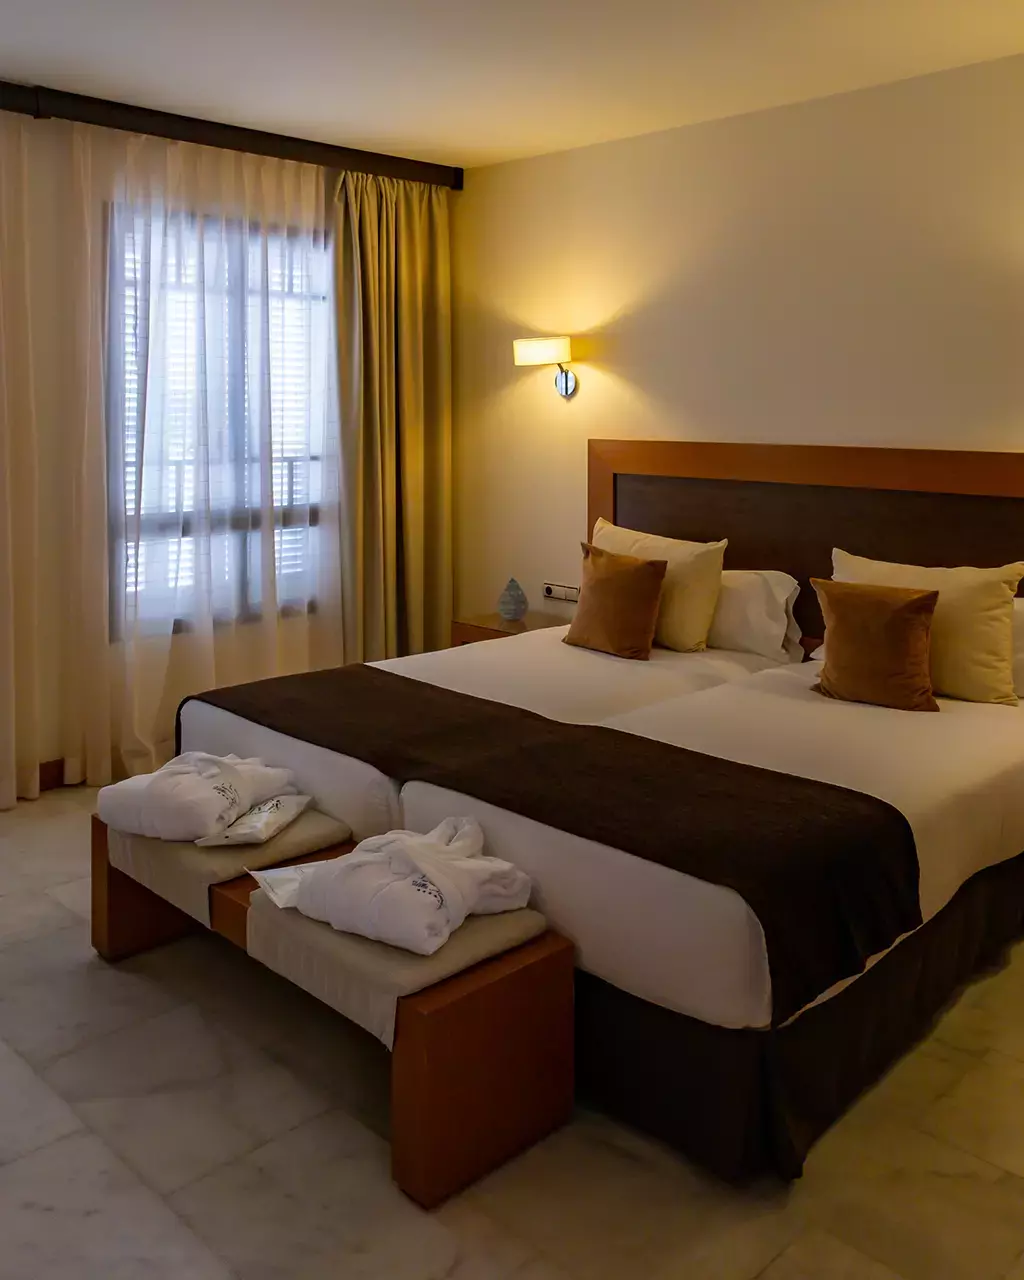 Où dormir à Tenerife ? Notre top 3 des hôtels de luxe à Adeje